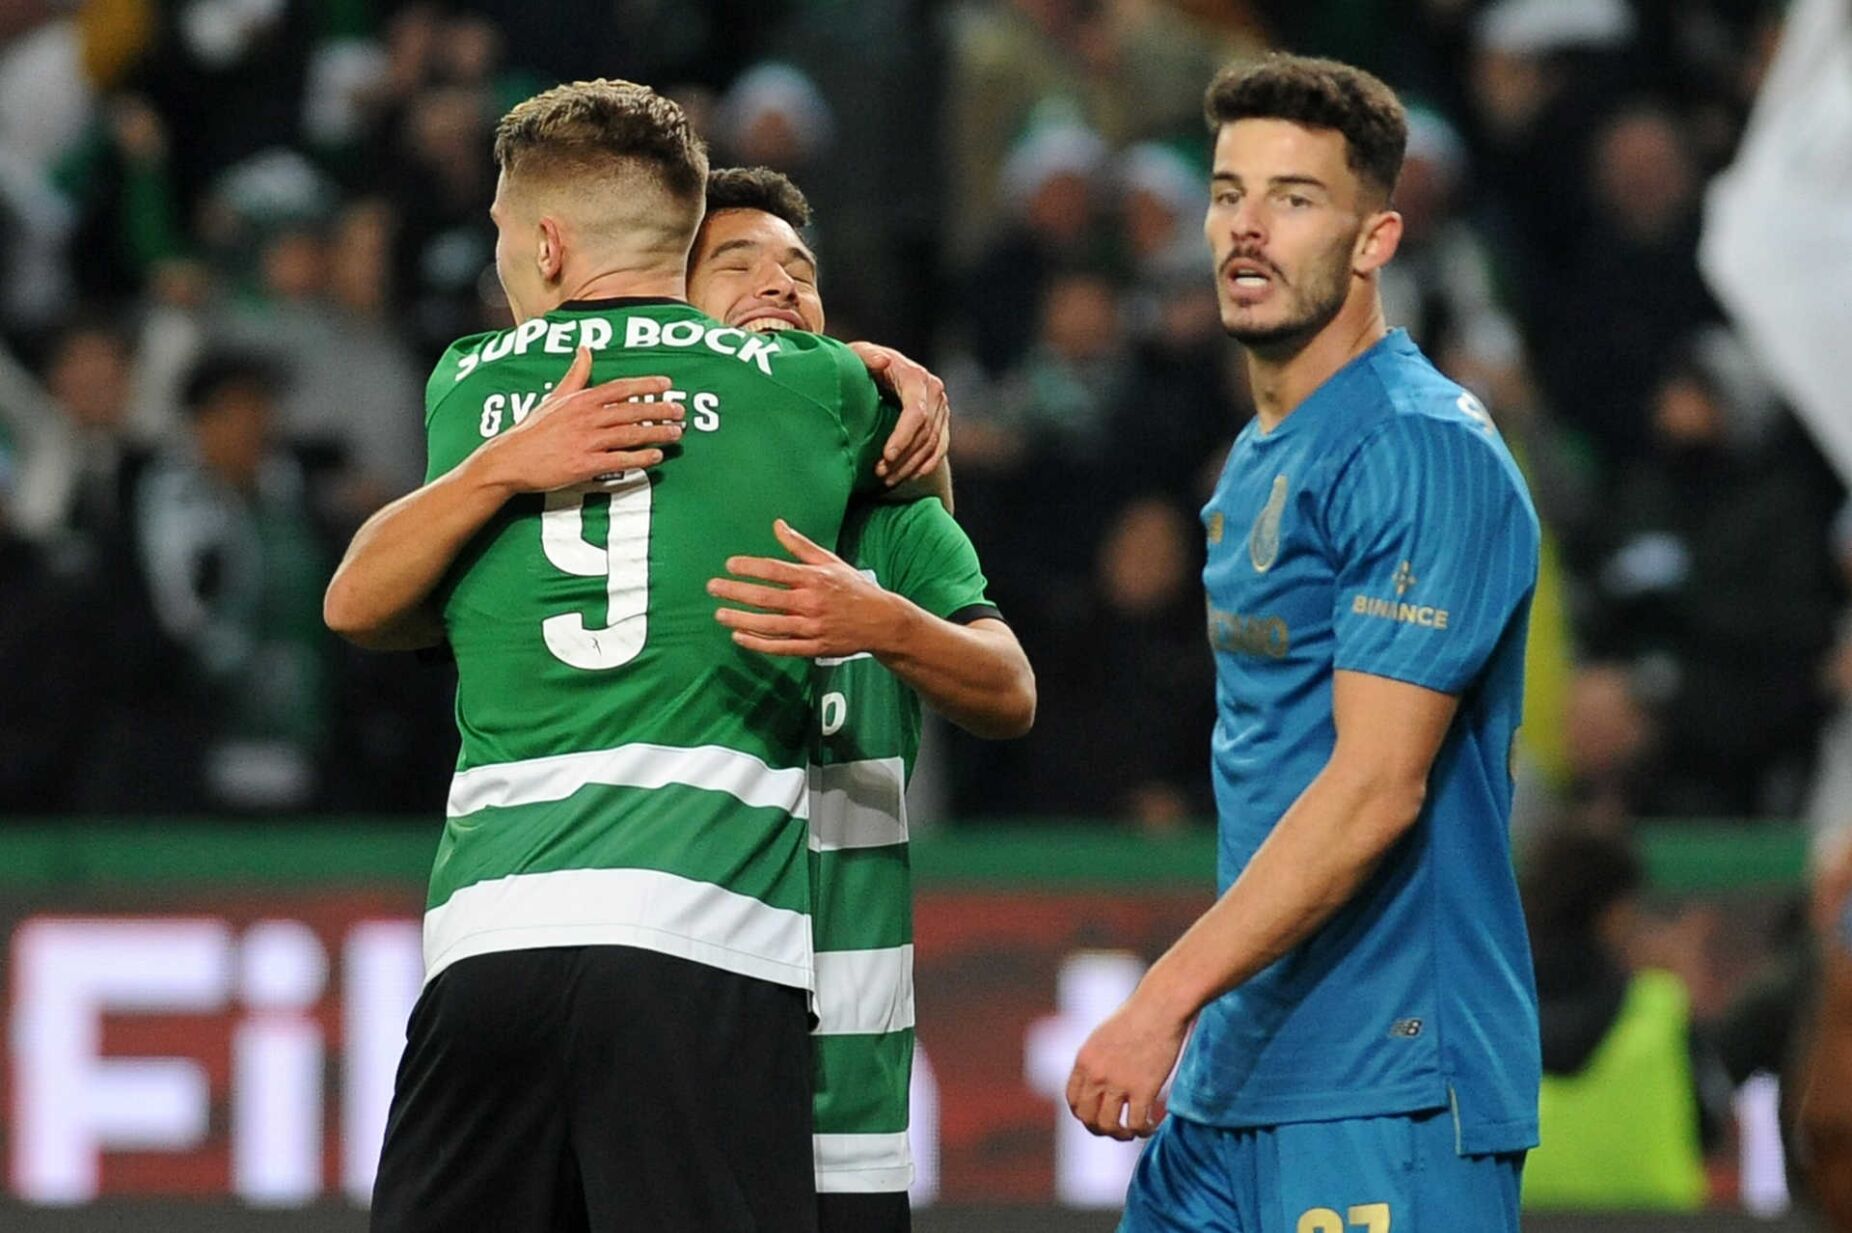 Basquetebol AO VIVO: o jogo 2 da meia-final entre FC Porto e Sporting